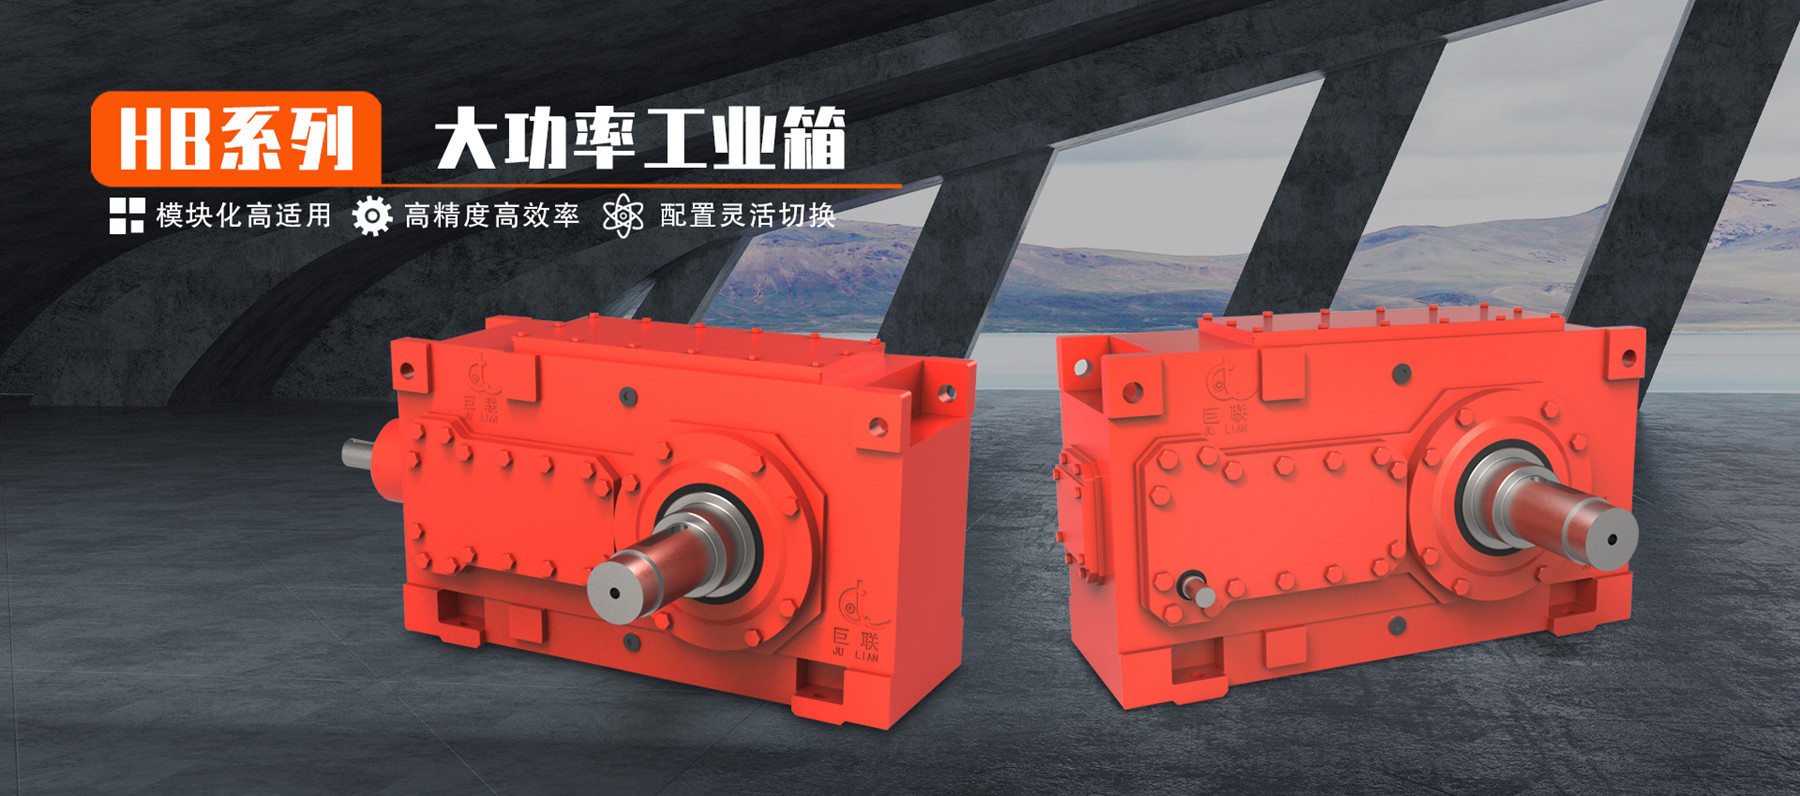 HB系列大功率工业齿轮箱 模块化高适用 高精度高效率 配置灵活切换